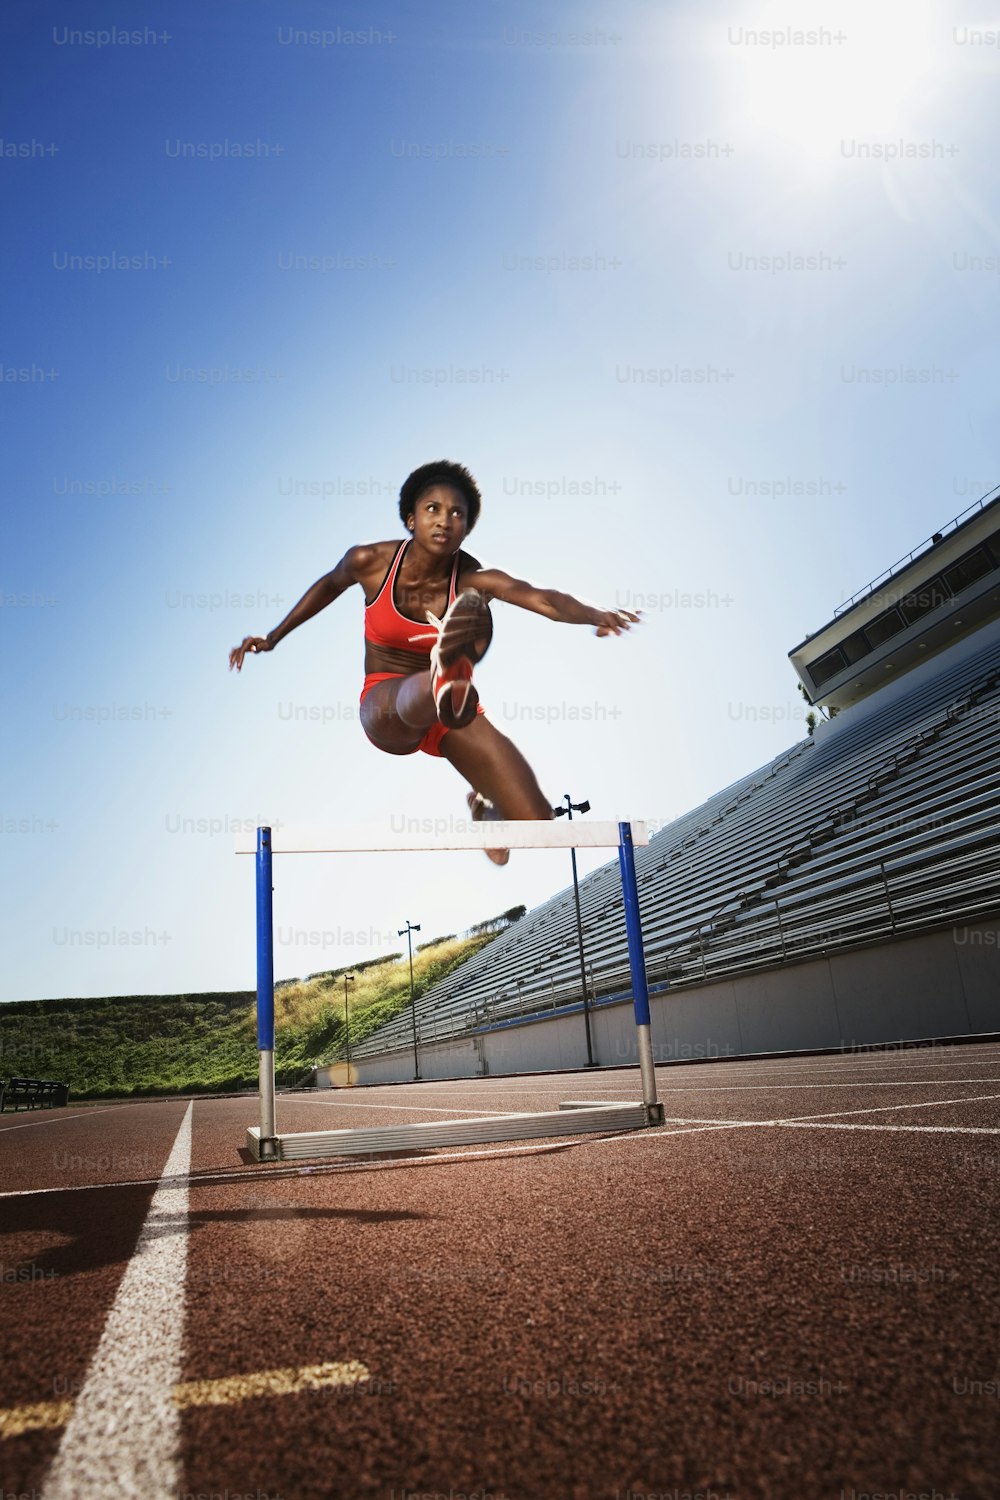 Une femme saute par-dessus un obstacle sur une piste